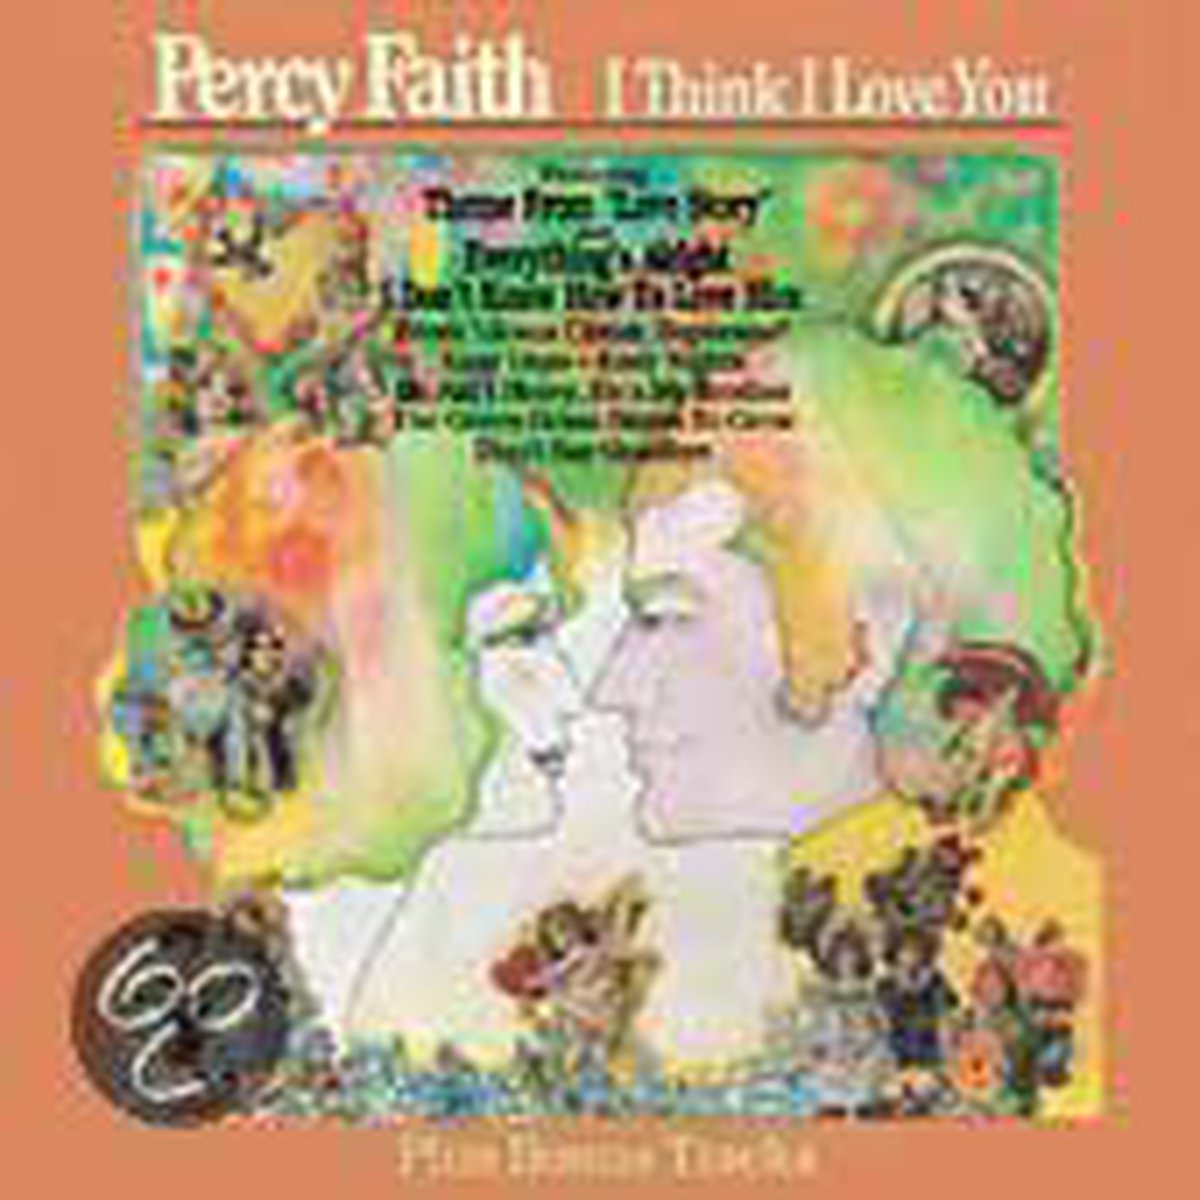 I Think I Love You - Percy Faith & His Orchestra